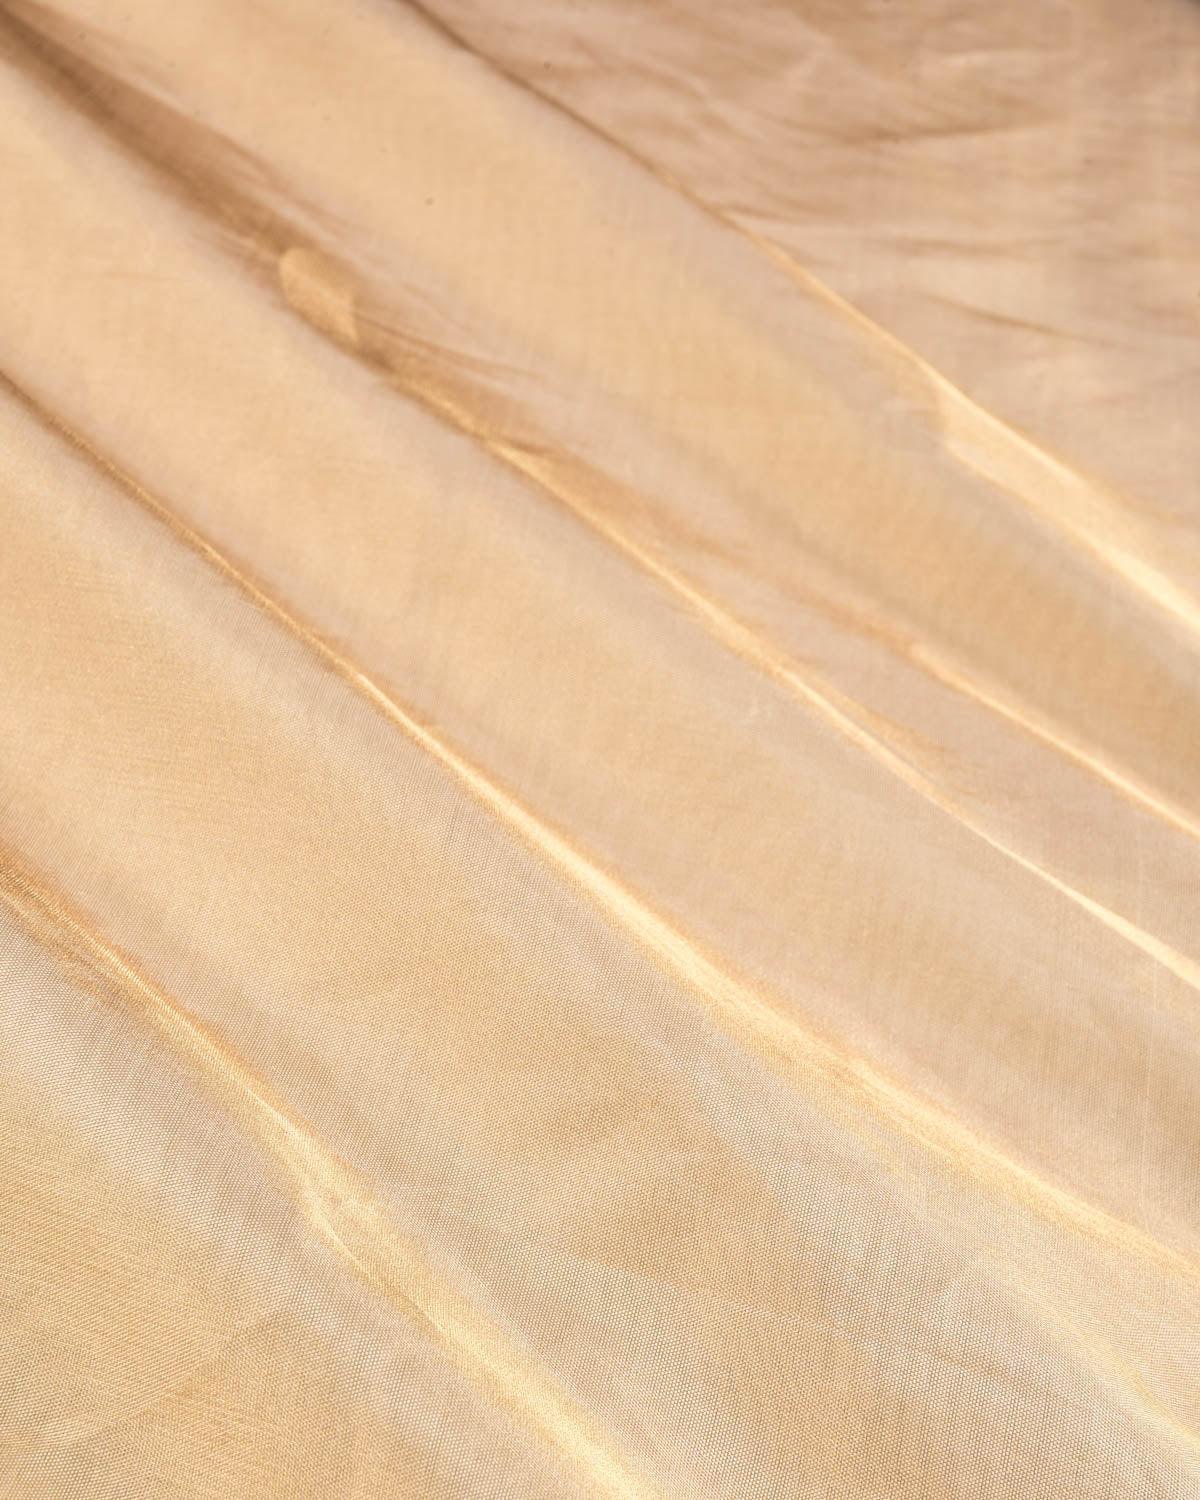 Metallic Gold Banarasi Brocade Handwoven Katan Tissue Fabric - By HolyWeaves, Benares